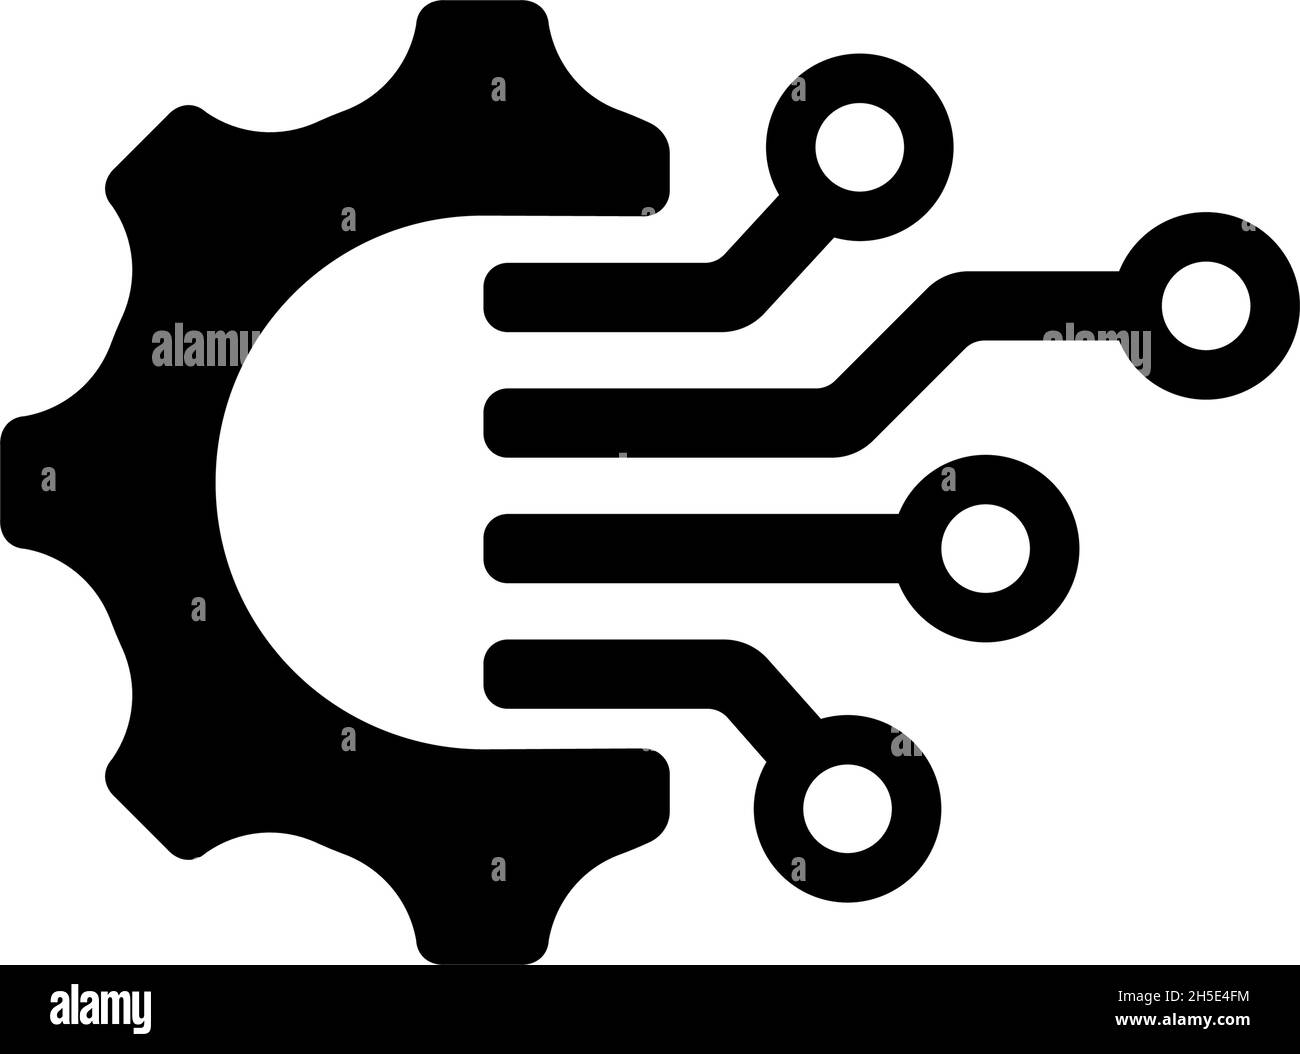 DX ( digital transformation ) vector icon illustration Stock Vector